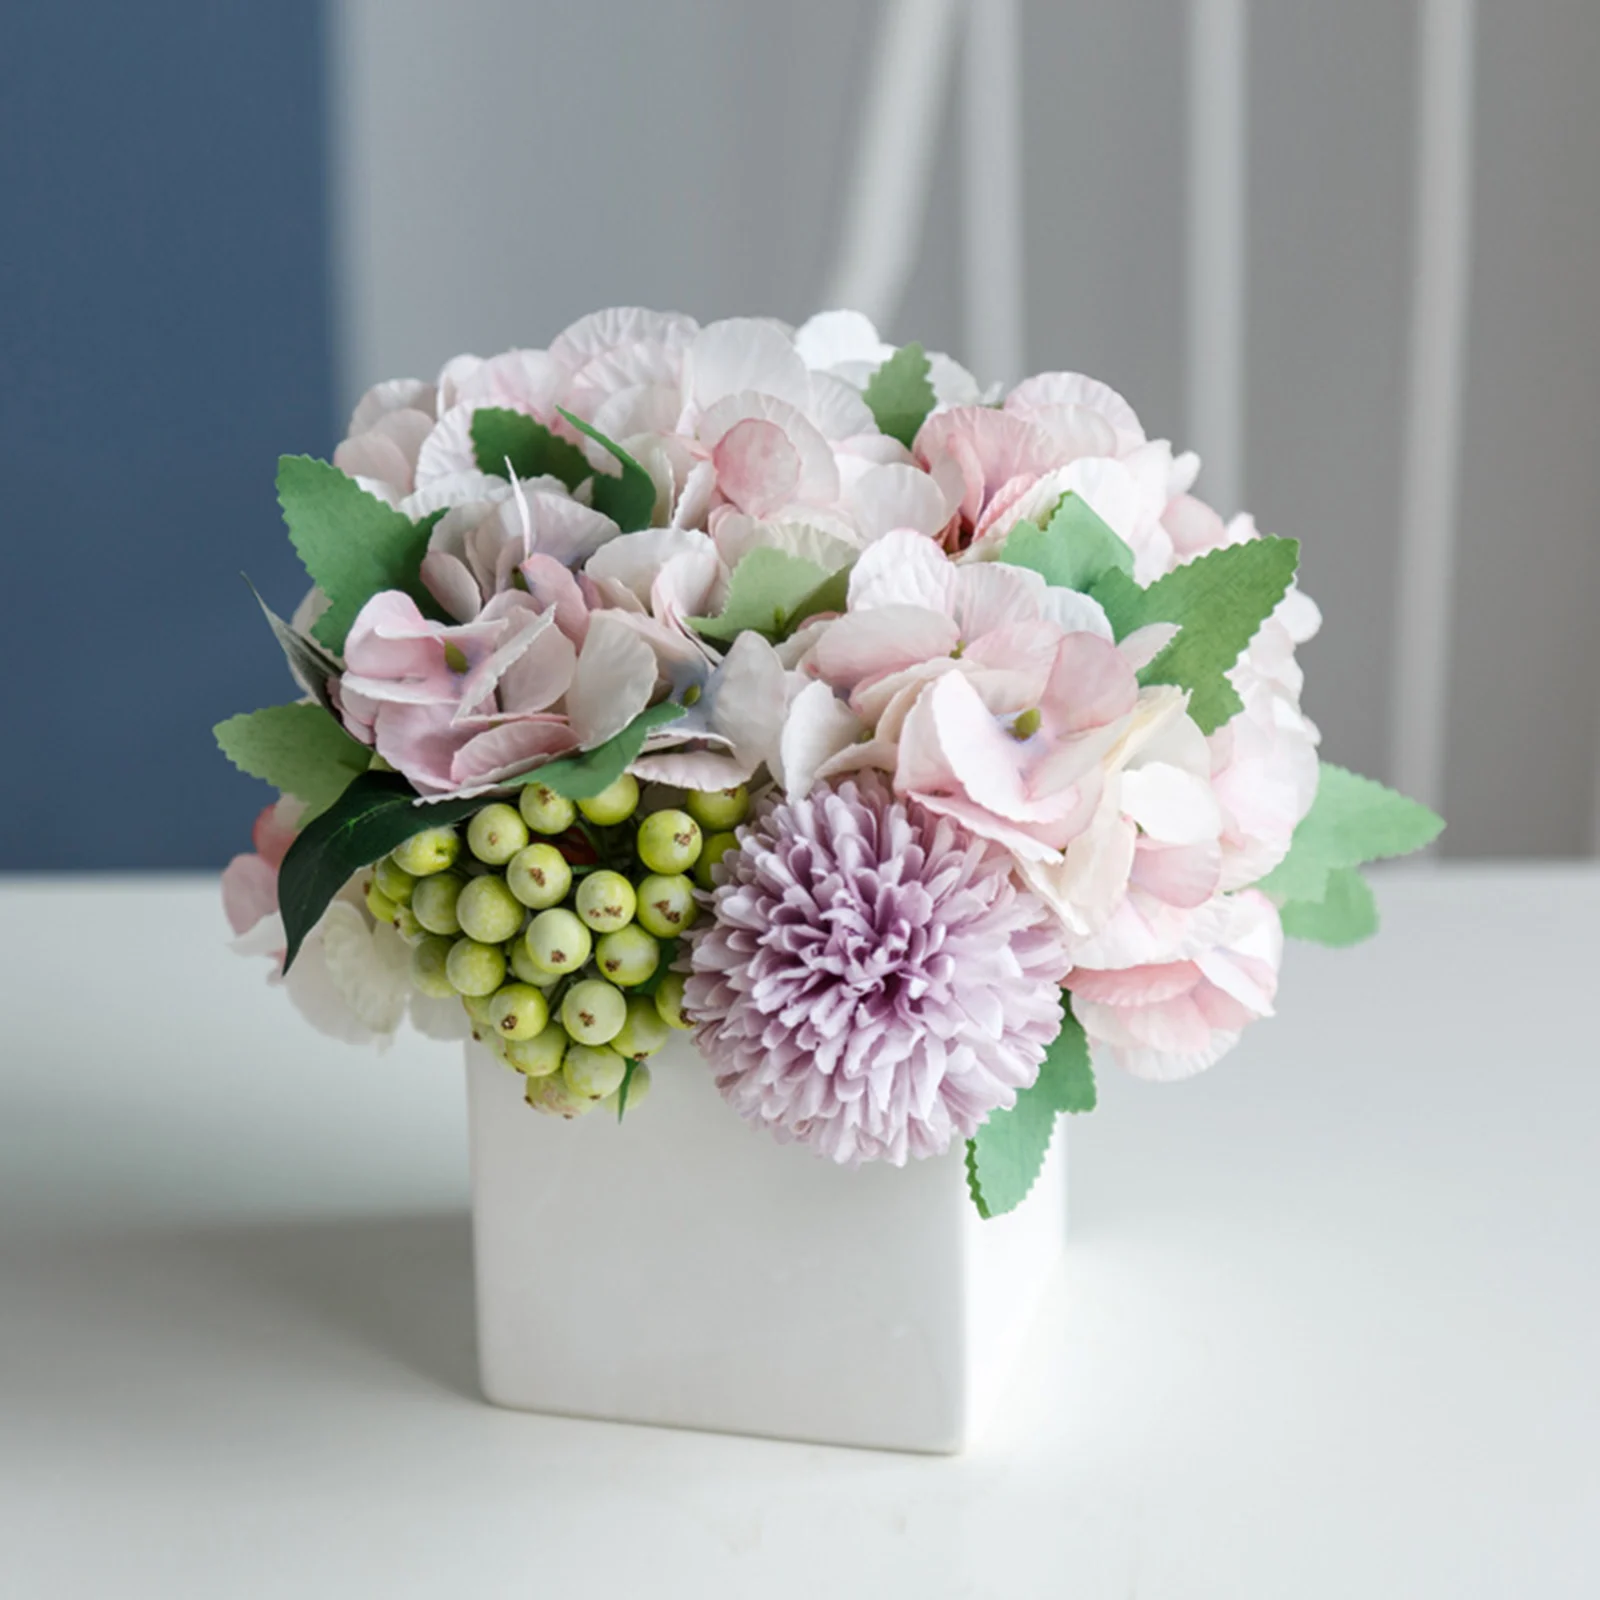 Artificial Flowers Vase Hydrangea Silk Floral Arrangements Home Office Decor